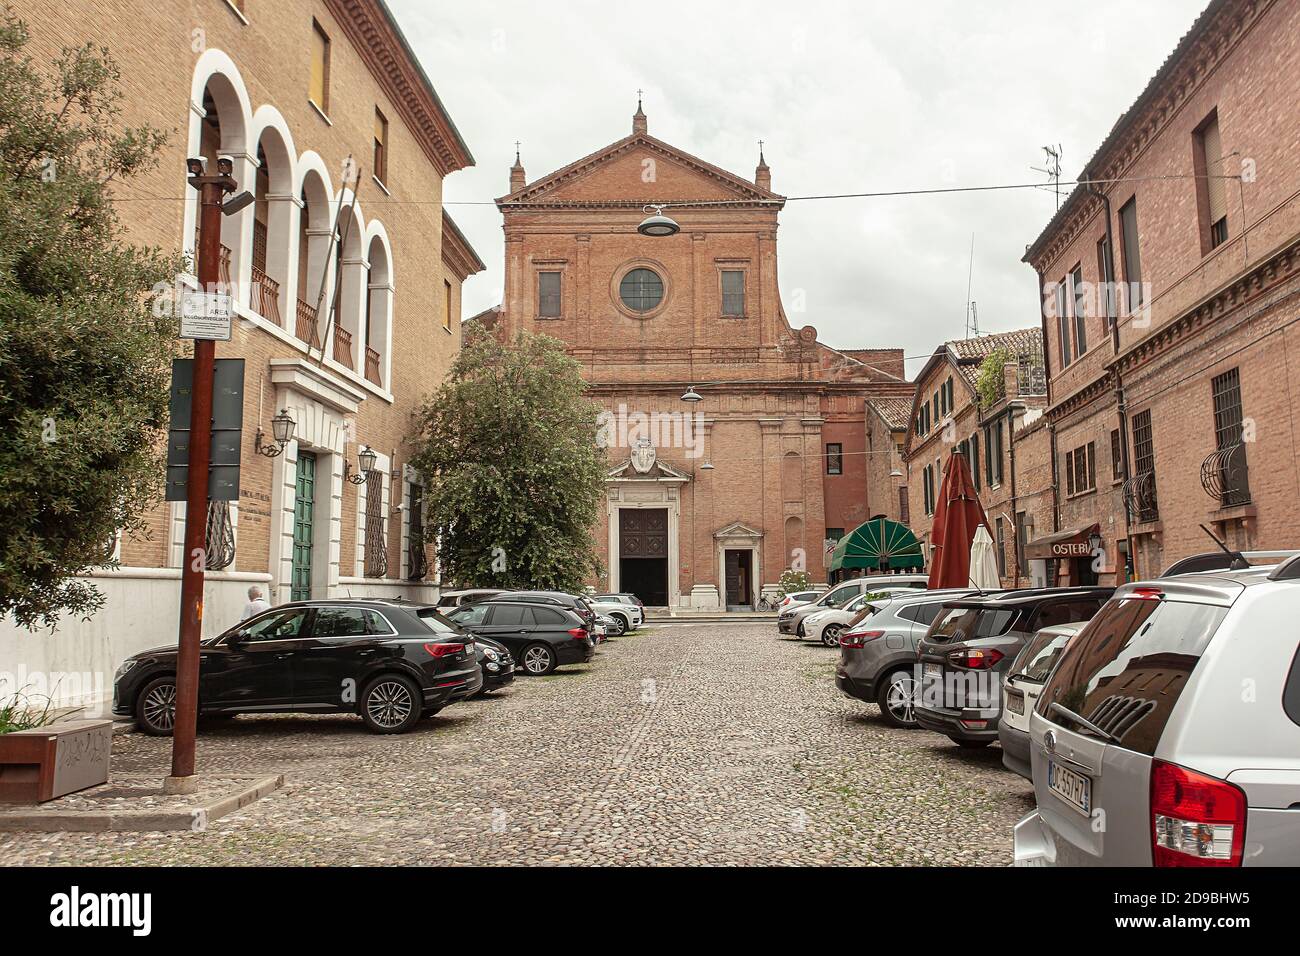 FERRARA, ITALIE 29 JUILLET 2020 : DÉTAIL d'une église à Ferrara en Italie Banque D'Images